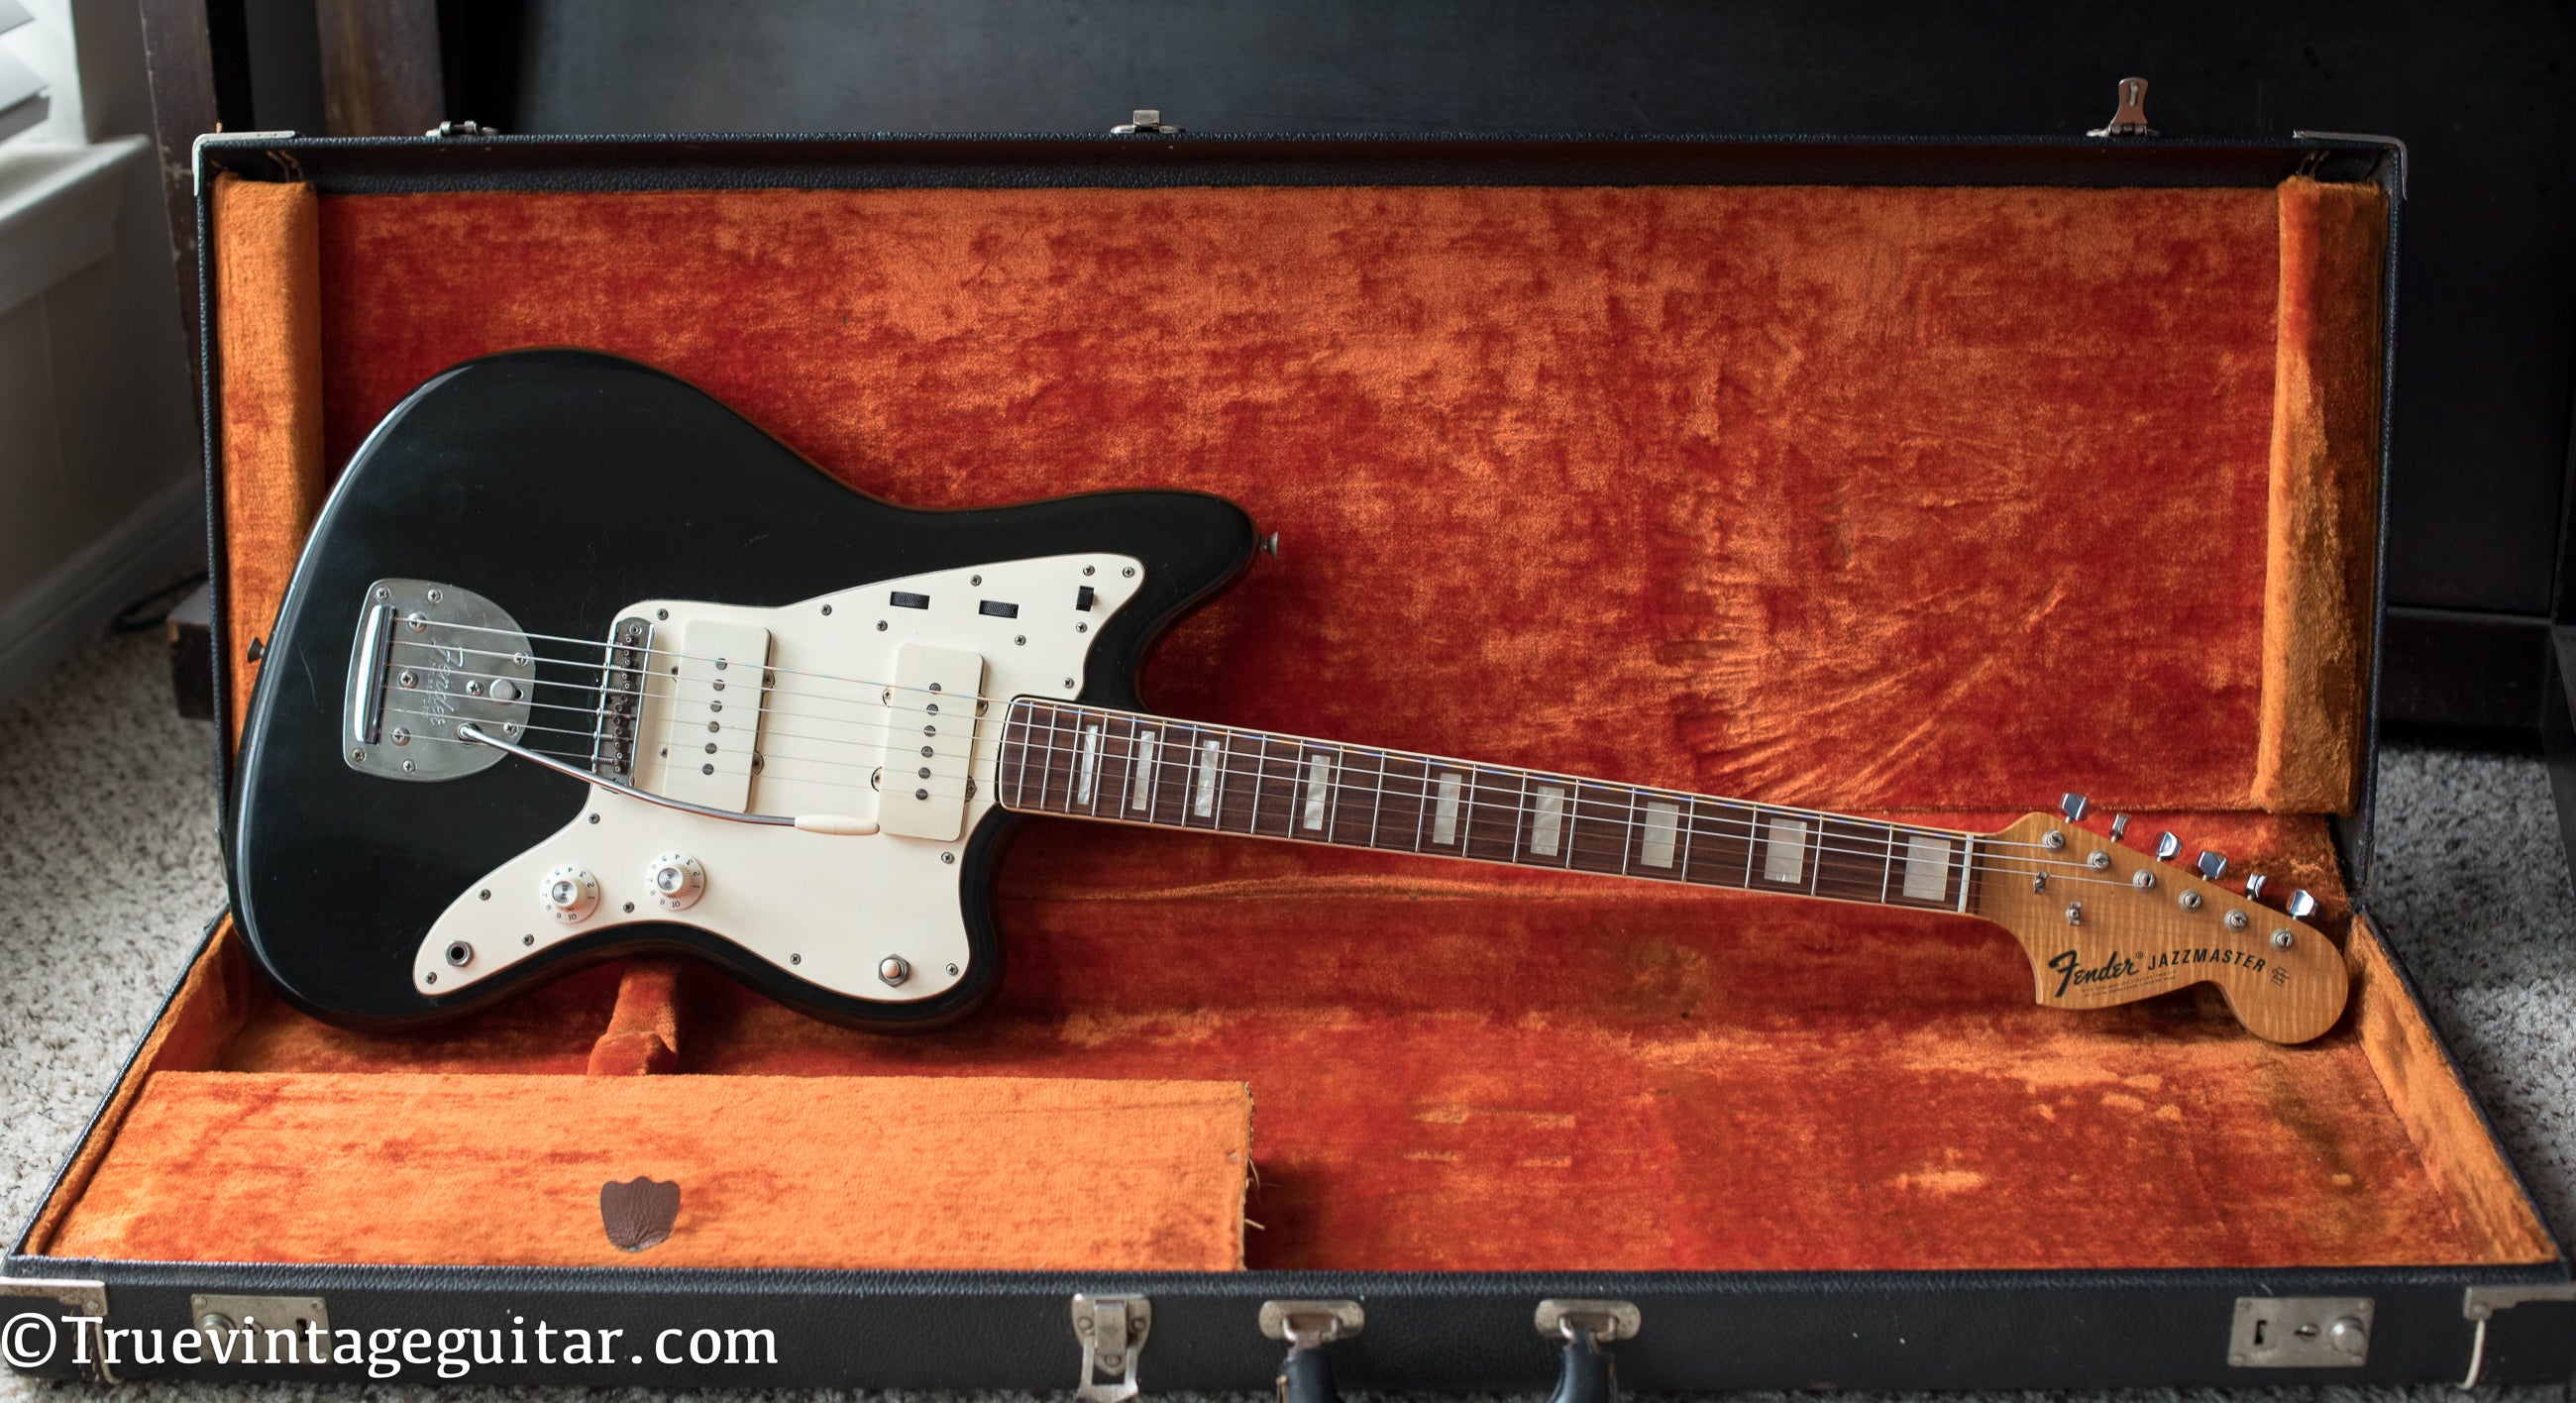 Vintage 1971 Fender Jazzmaster Black guitar